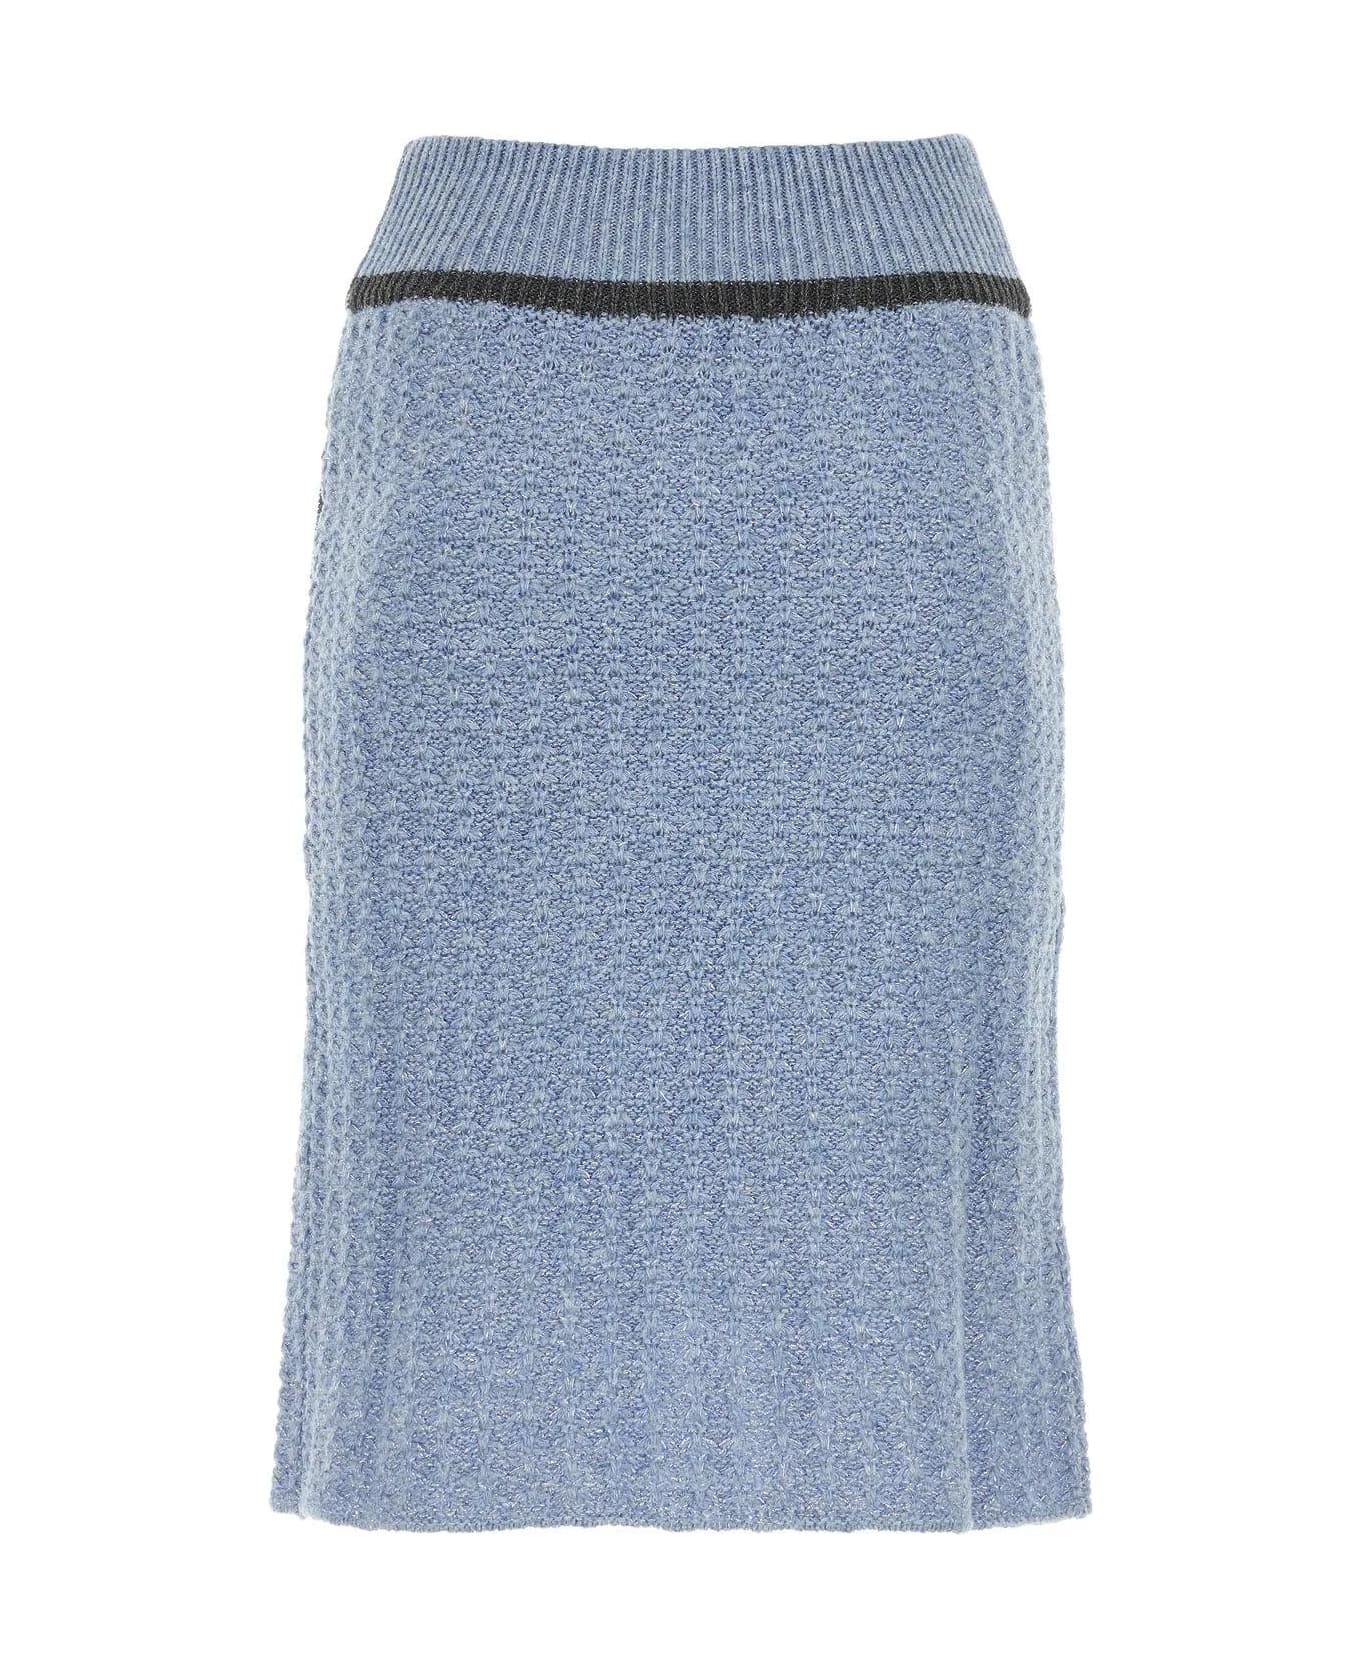 Cormio Cerulean Wool Blend Skirt - BLUE PERVINCA